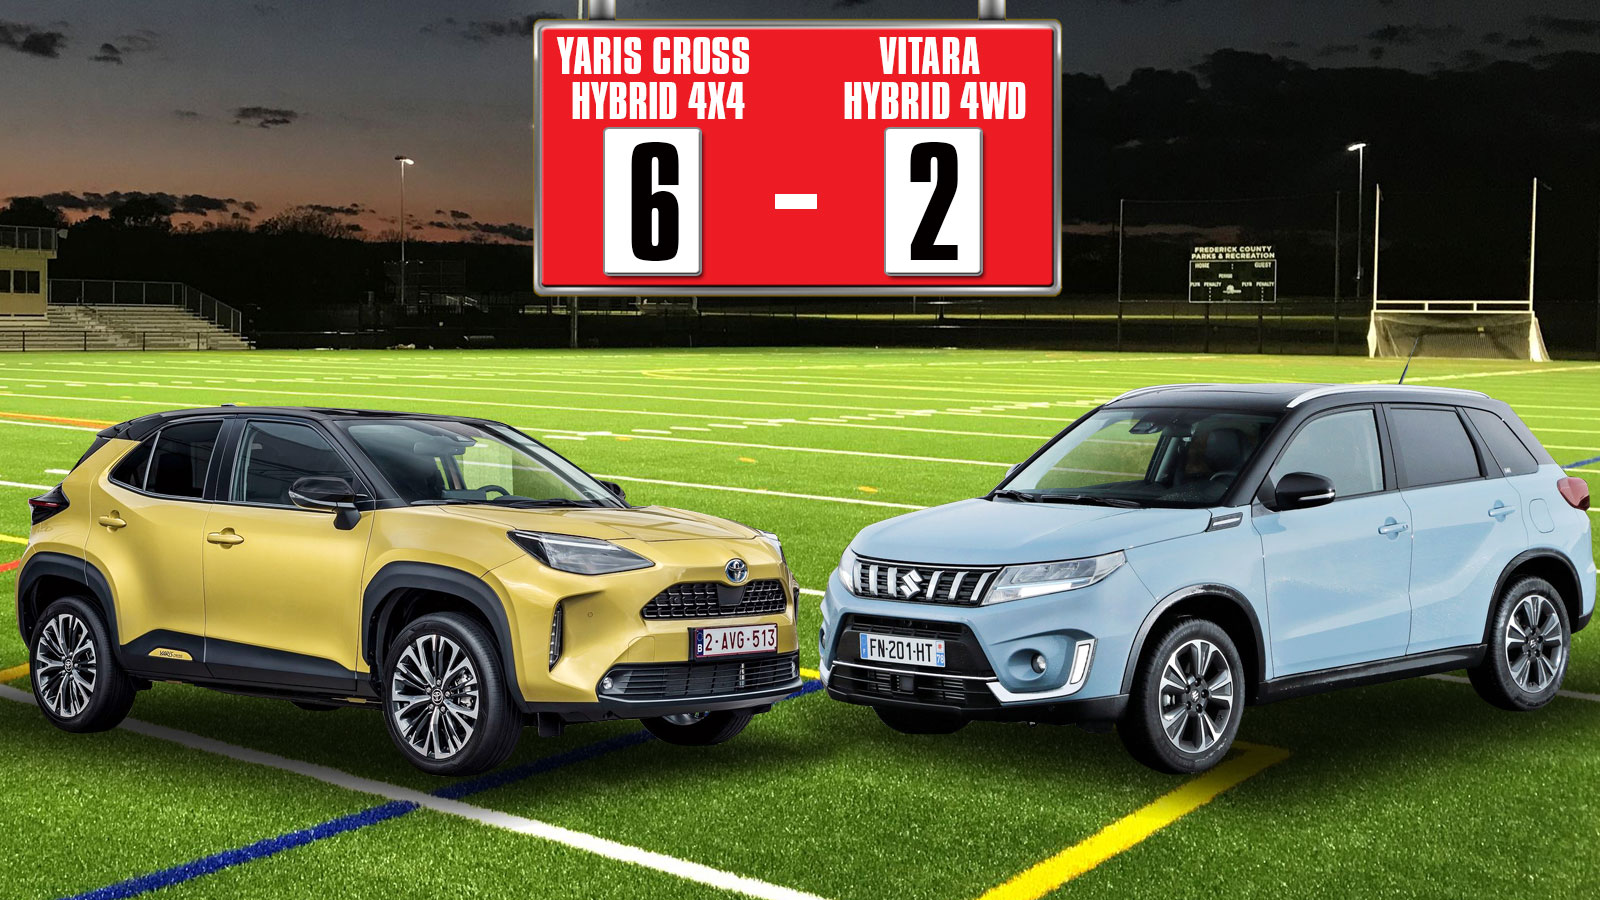 Στα 11 βήματα: Συγκρίνουμε Vitara Hybrid 4WD με Yaris Cross Hybrid 4X4